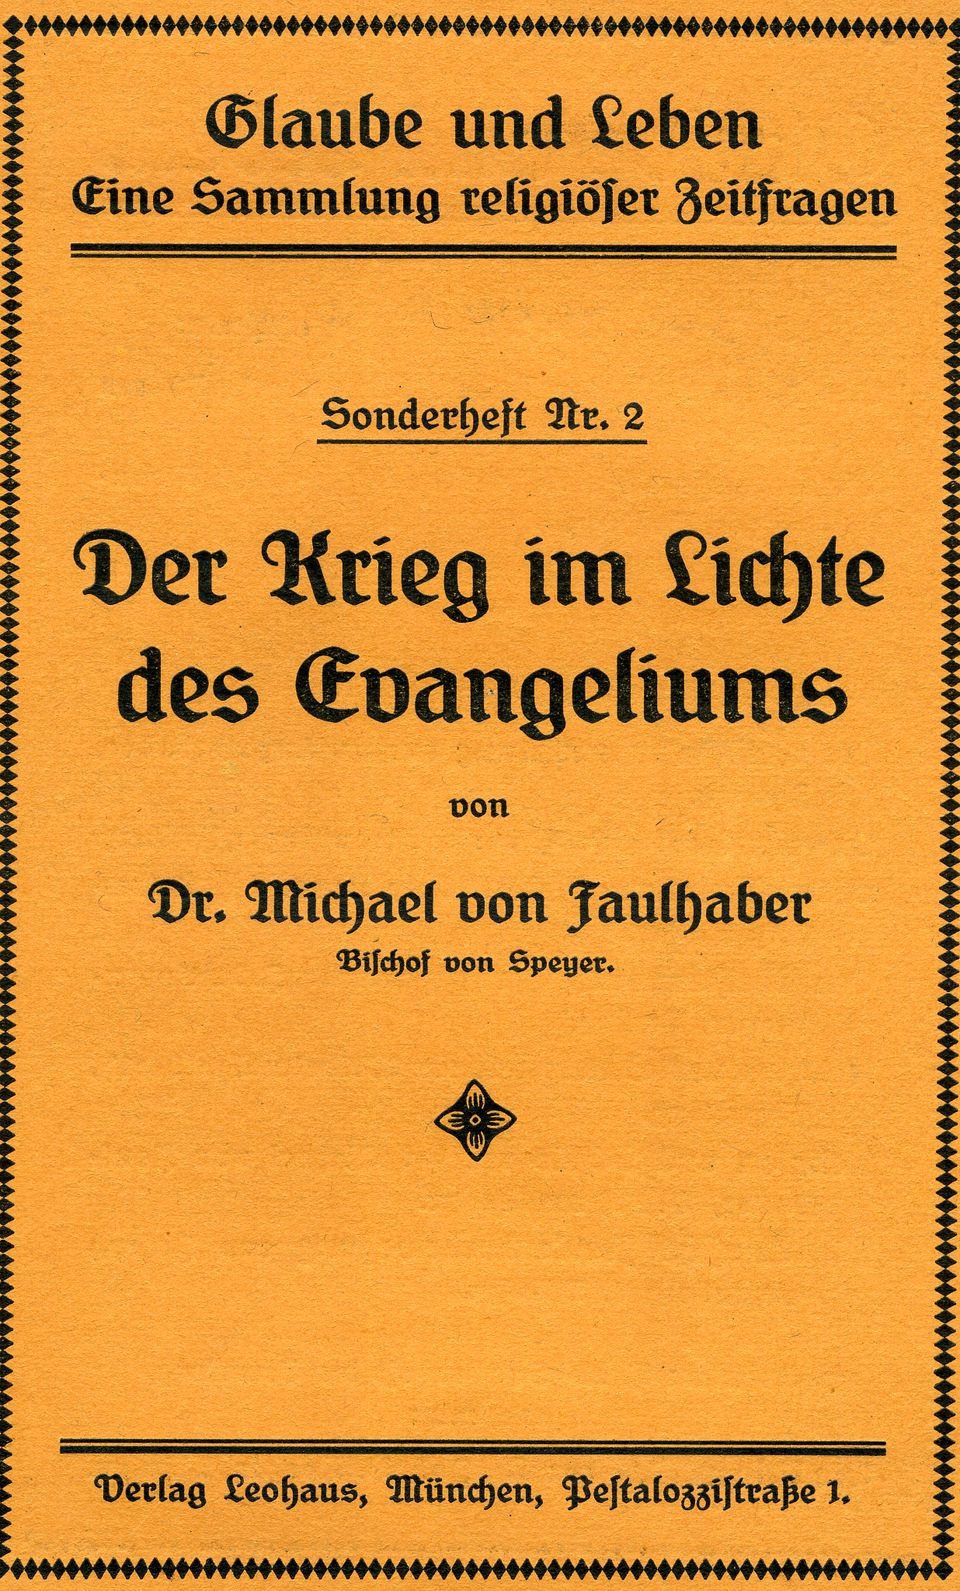 Sammlung religiöser Zeitfragen (Historisches Museum der Pfalz, Speyer CC BY)